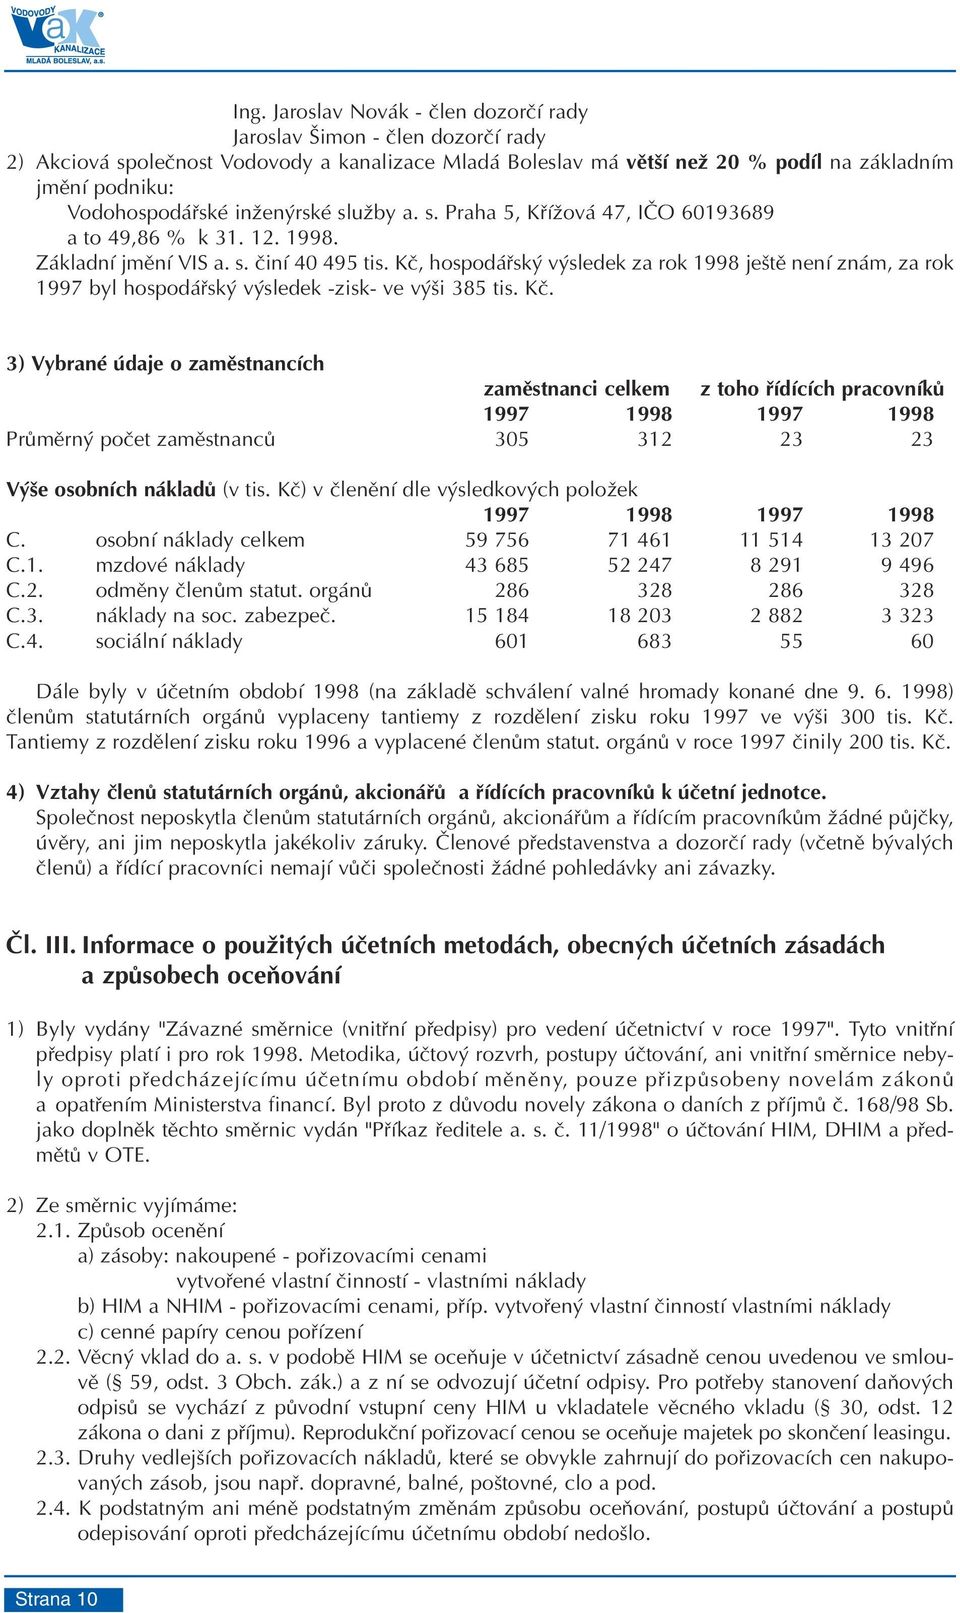 Kè, hospodáøský výsledek za rok 1998 ještì není znám, za rok 1997 byl hospodáøský výsledek -zisk- ve výši 385 tis. Kè.